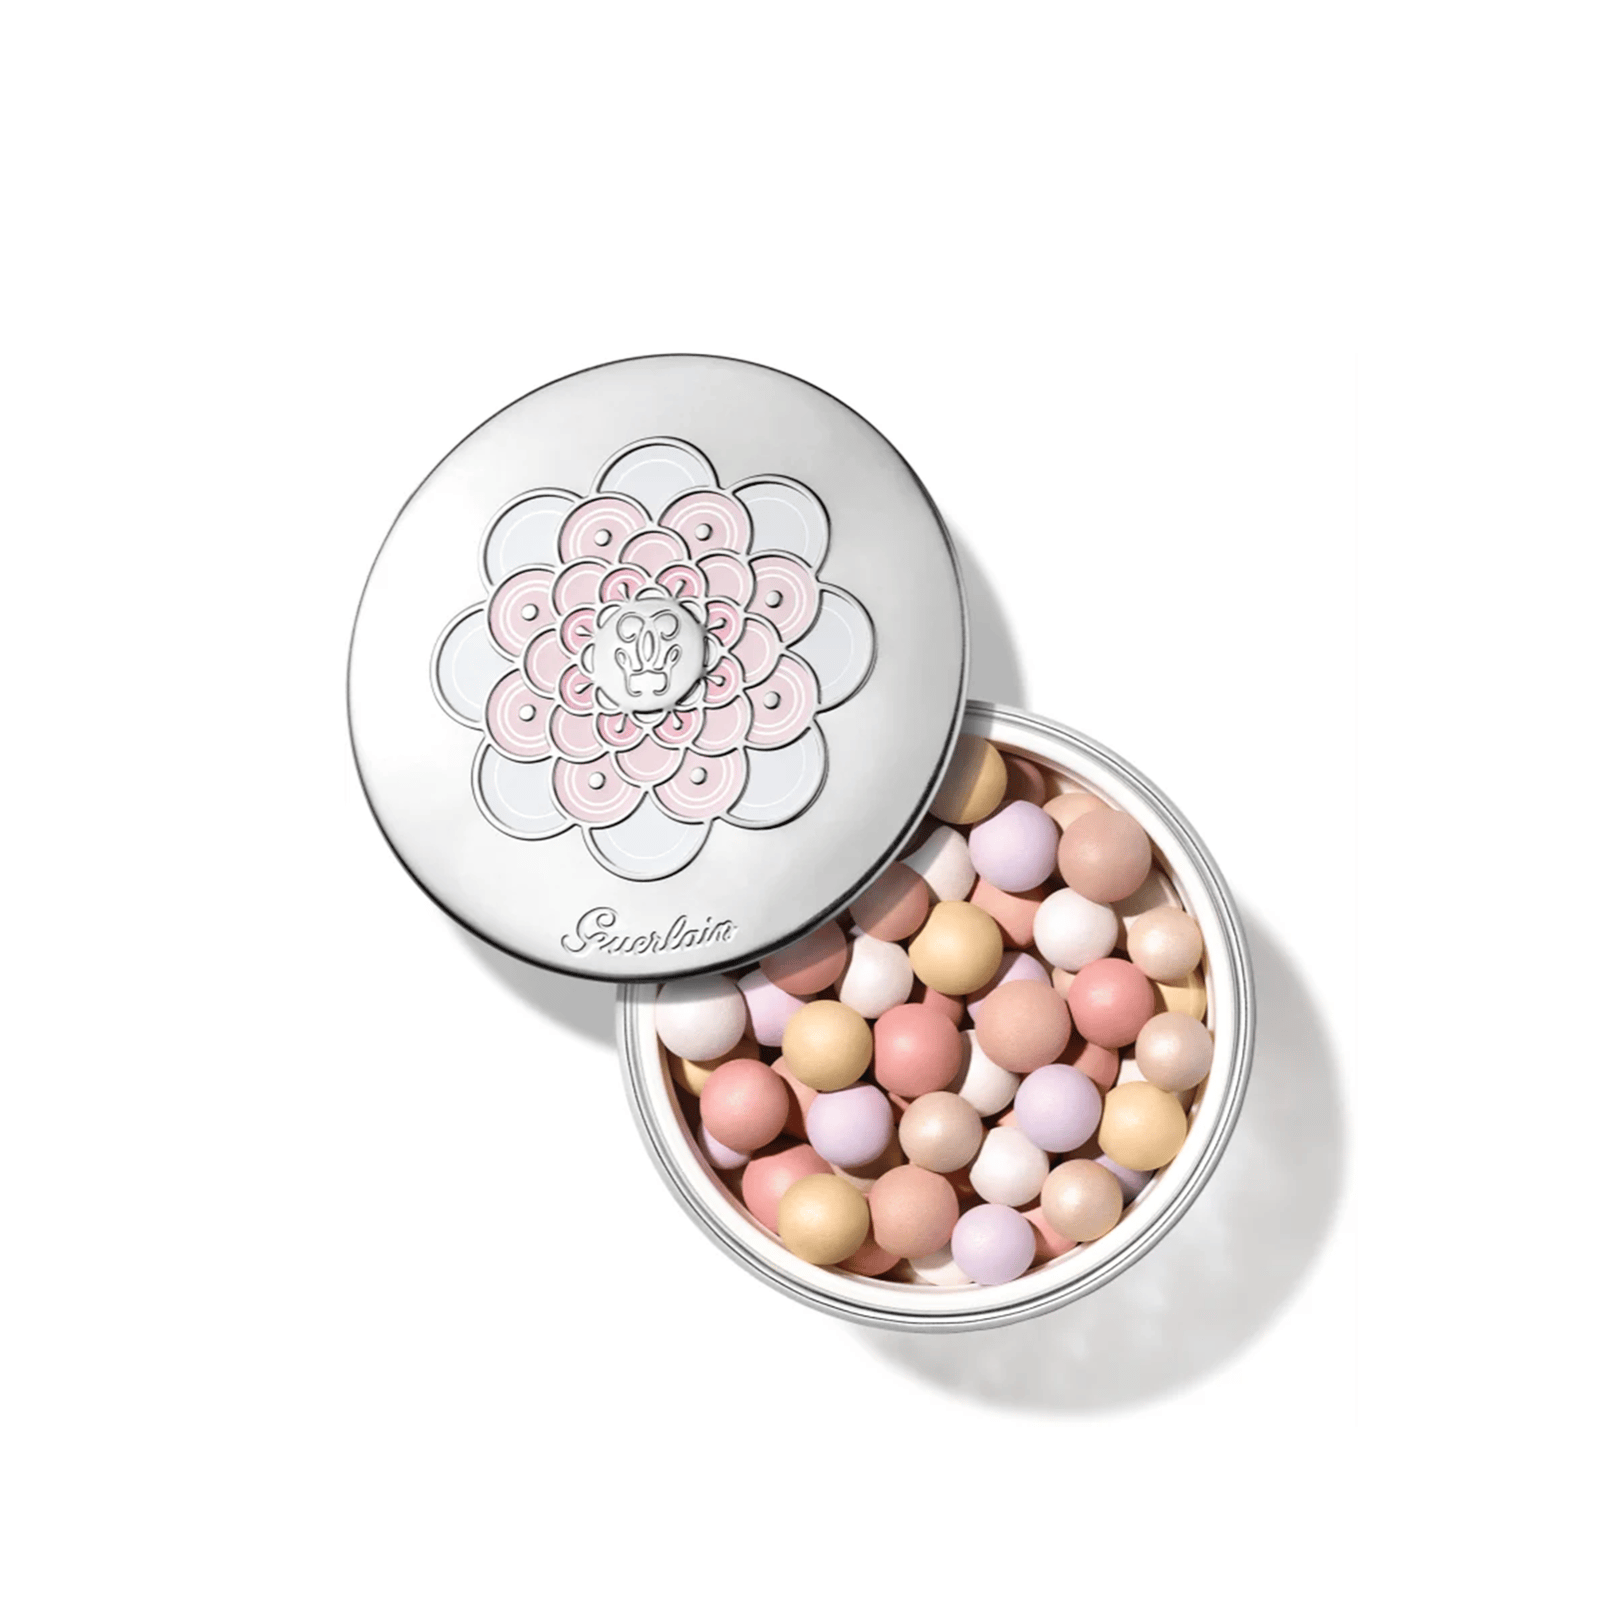 Guerlain Météorites Light-Revealing Pearls Of Powder 3 Medium 25g